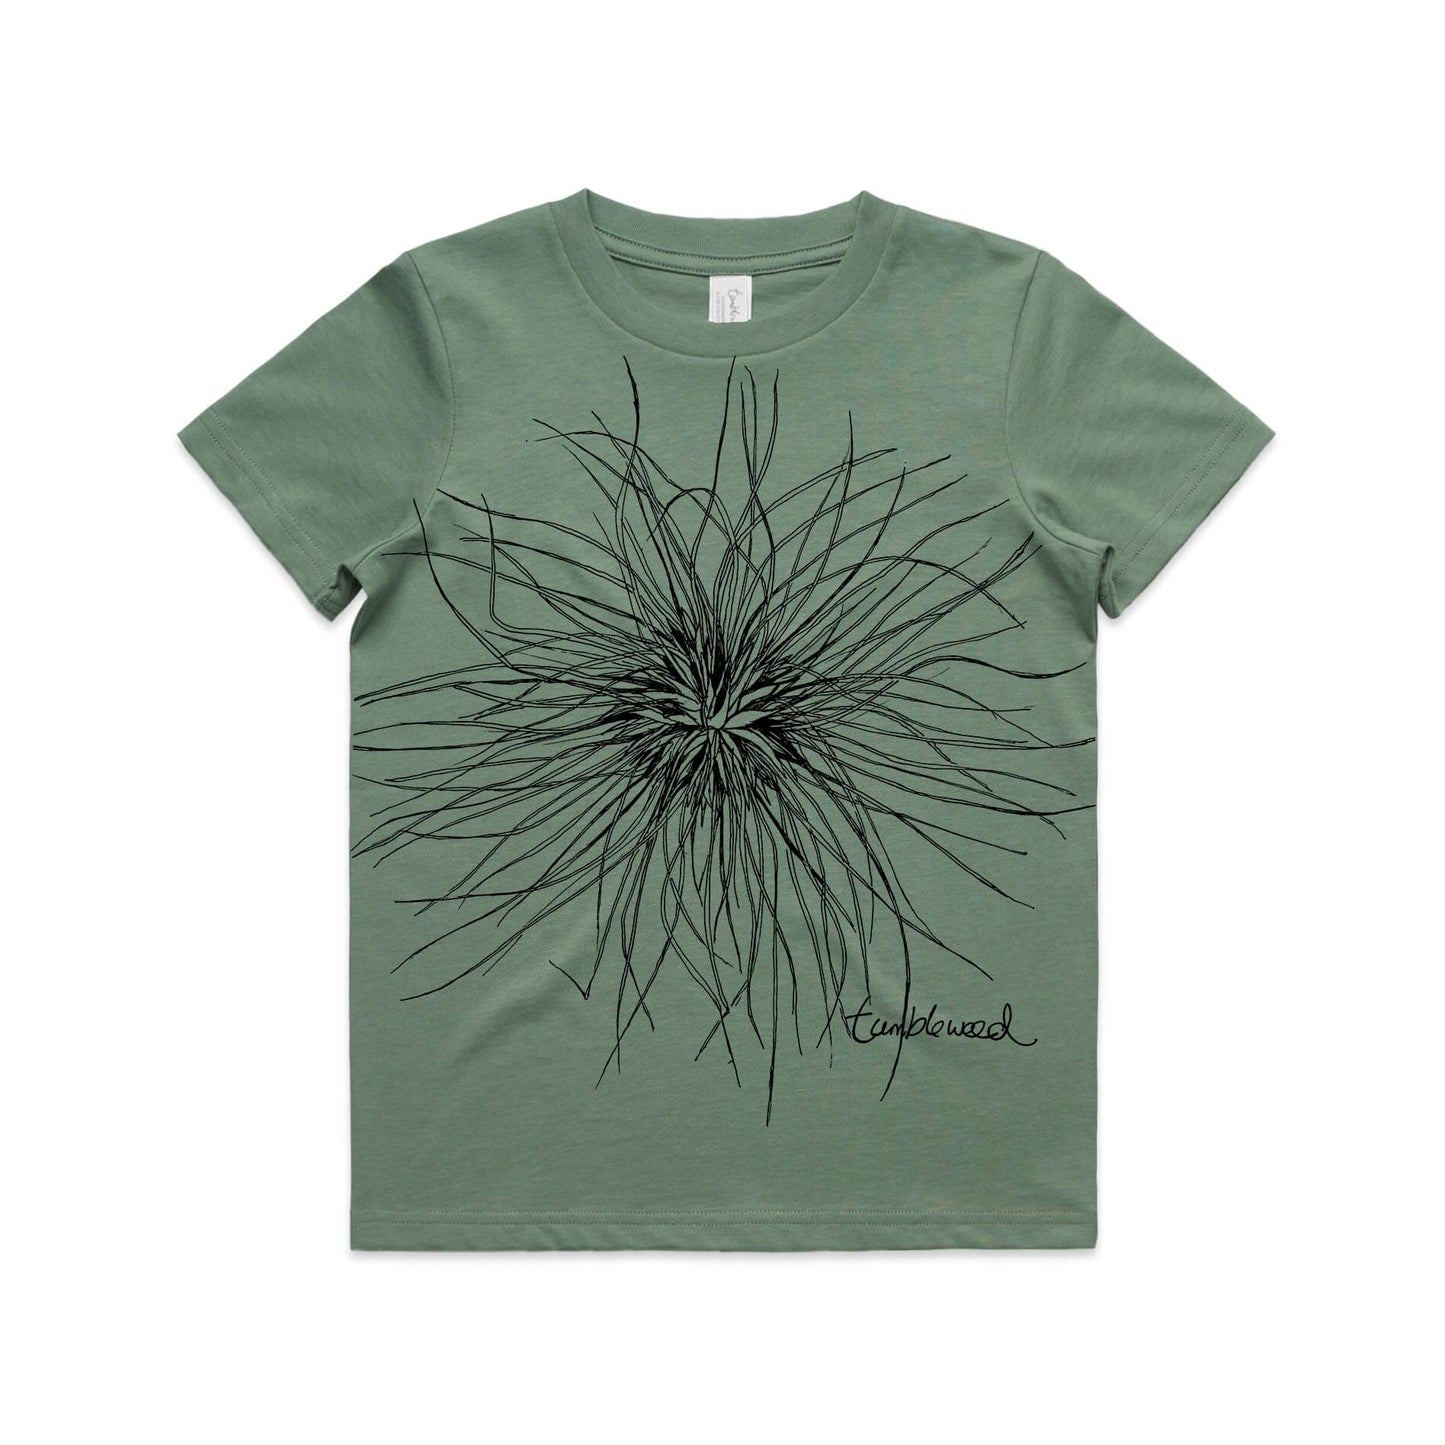 Sage, cotton kids' t-shirt with screen printed Kids tumbleweed design.